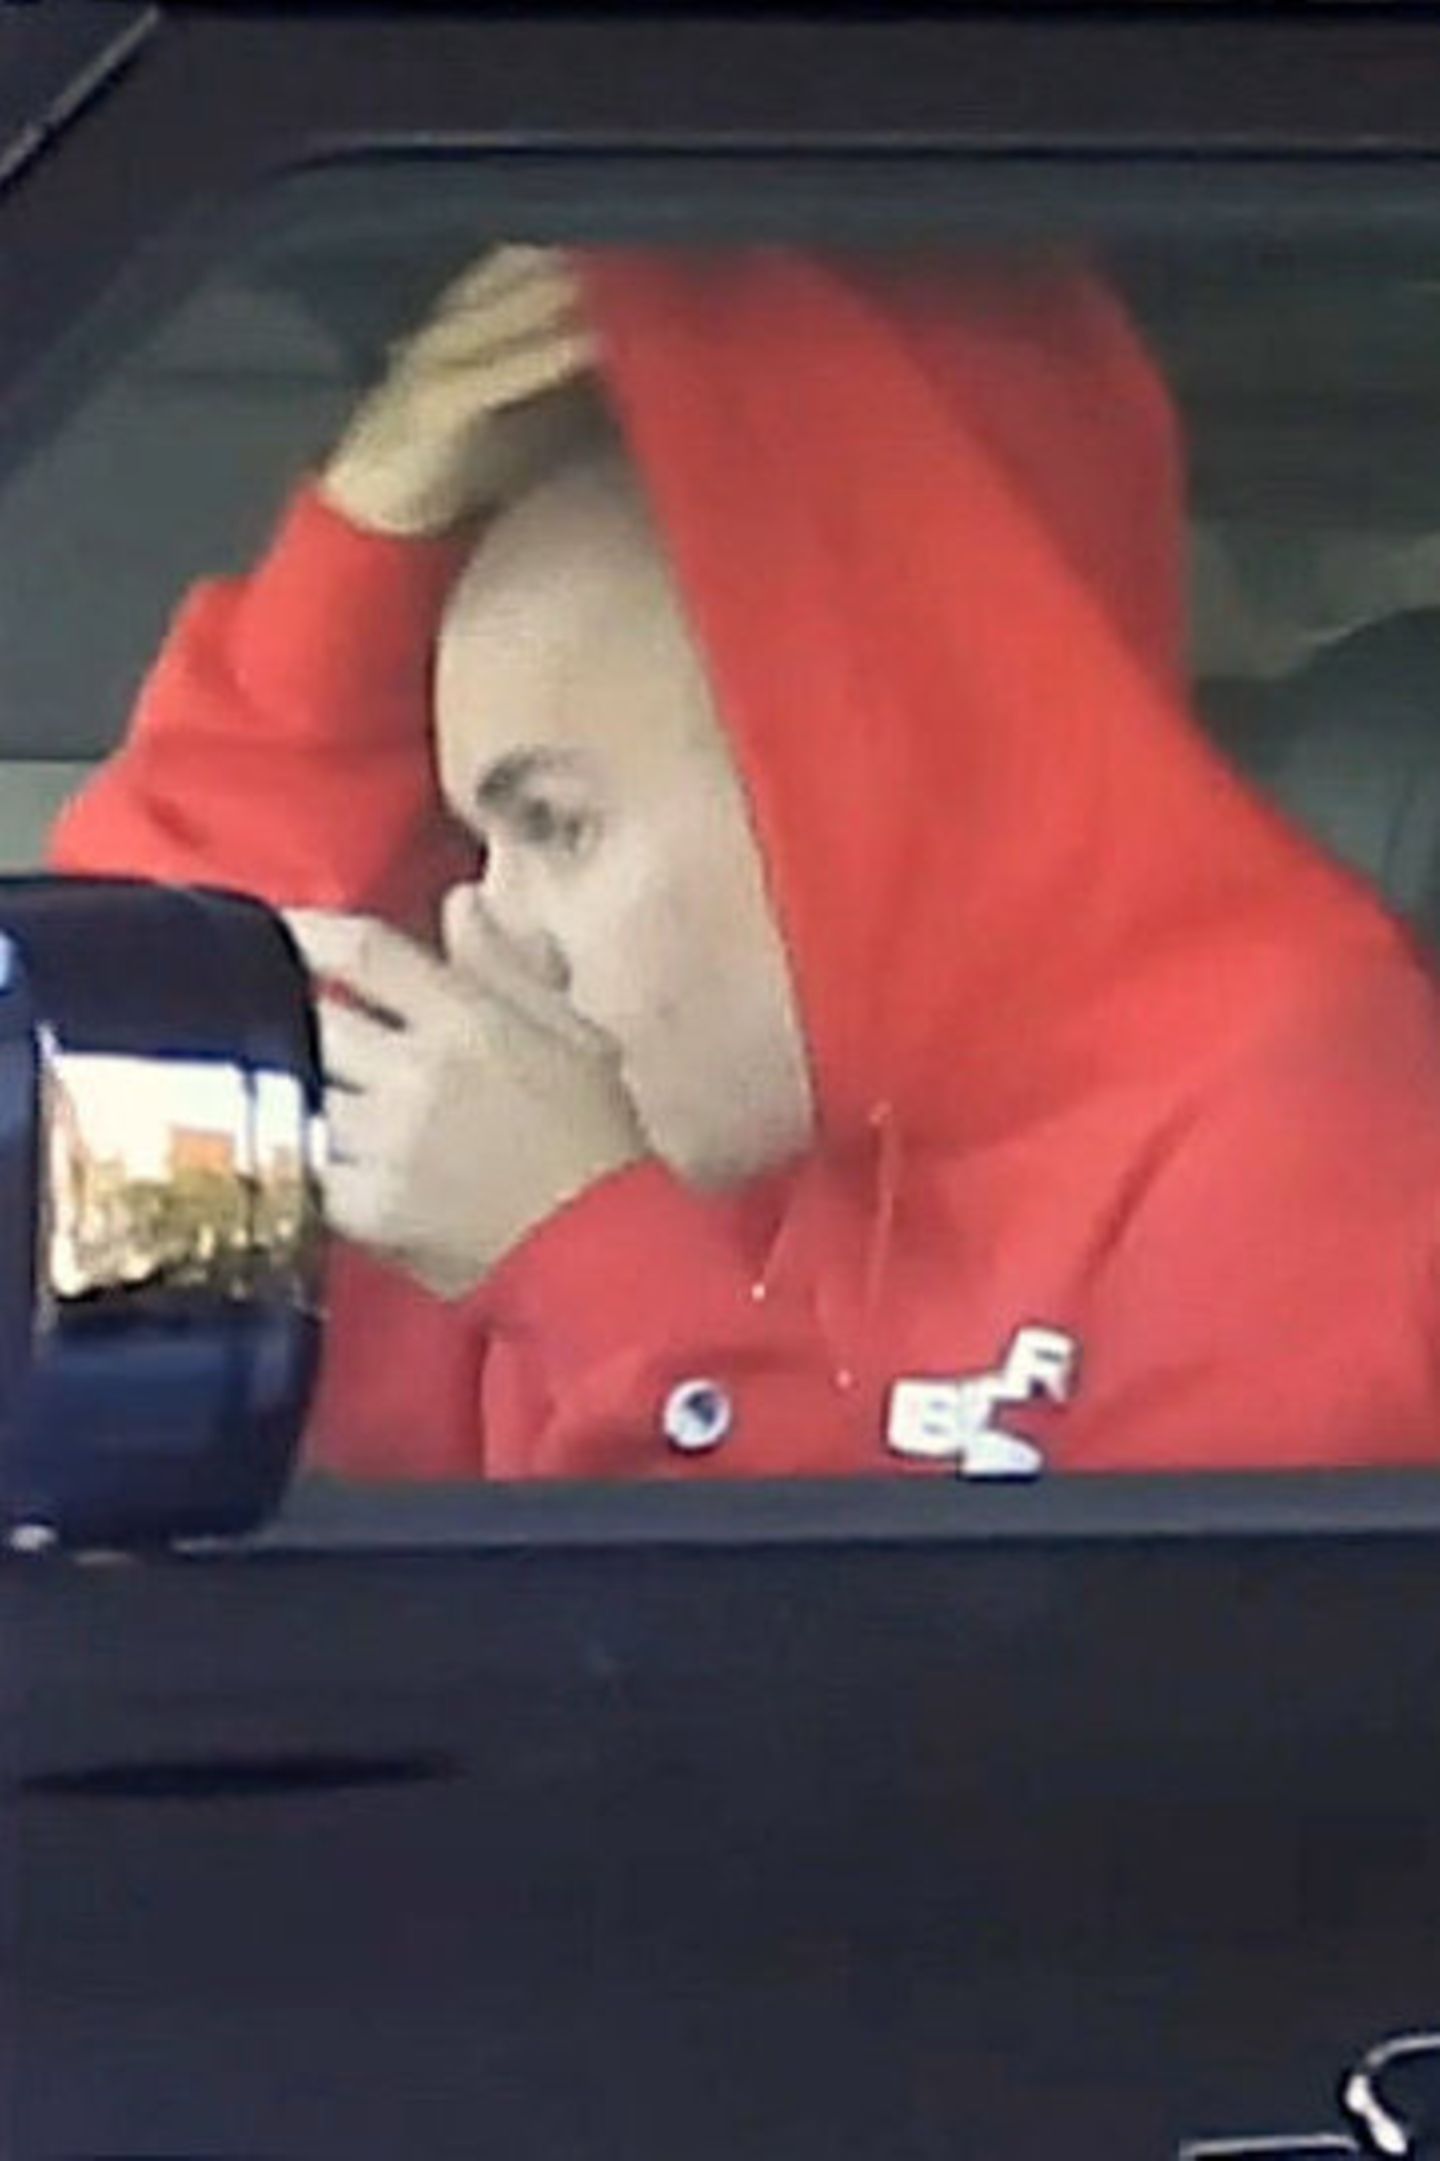 Absicht oder aus Versehen? Justin Bieber läuft den Paparazzi in Beverly Hills mit komplett kahl geschorenem Kopf vor die Linse. Vor rund zwei Wochen hatte er bei Instagram schon einen deutlich kürzeren Haarschnitt präsentiert, jetzt hat er offenbar noch einmal nachgelegt und sich das Haupthaar gänzlich entfernt. Was Hailey davon wohl hält?